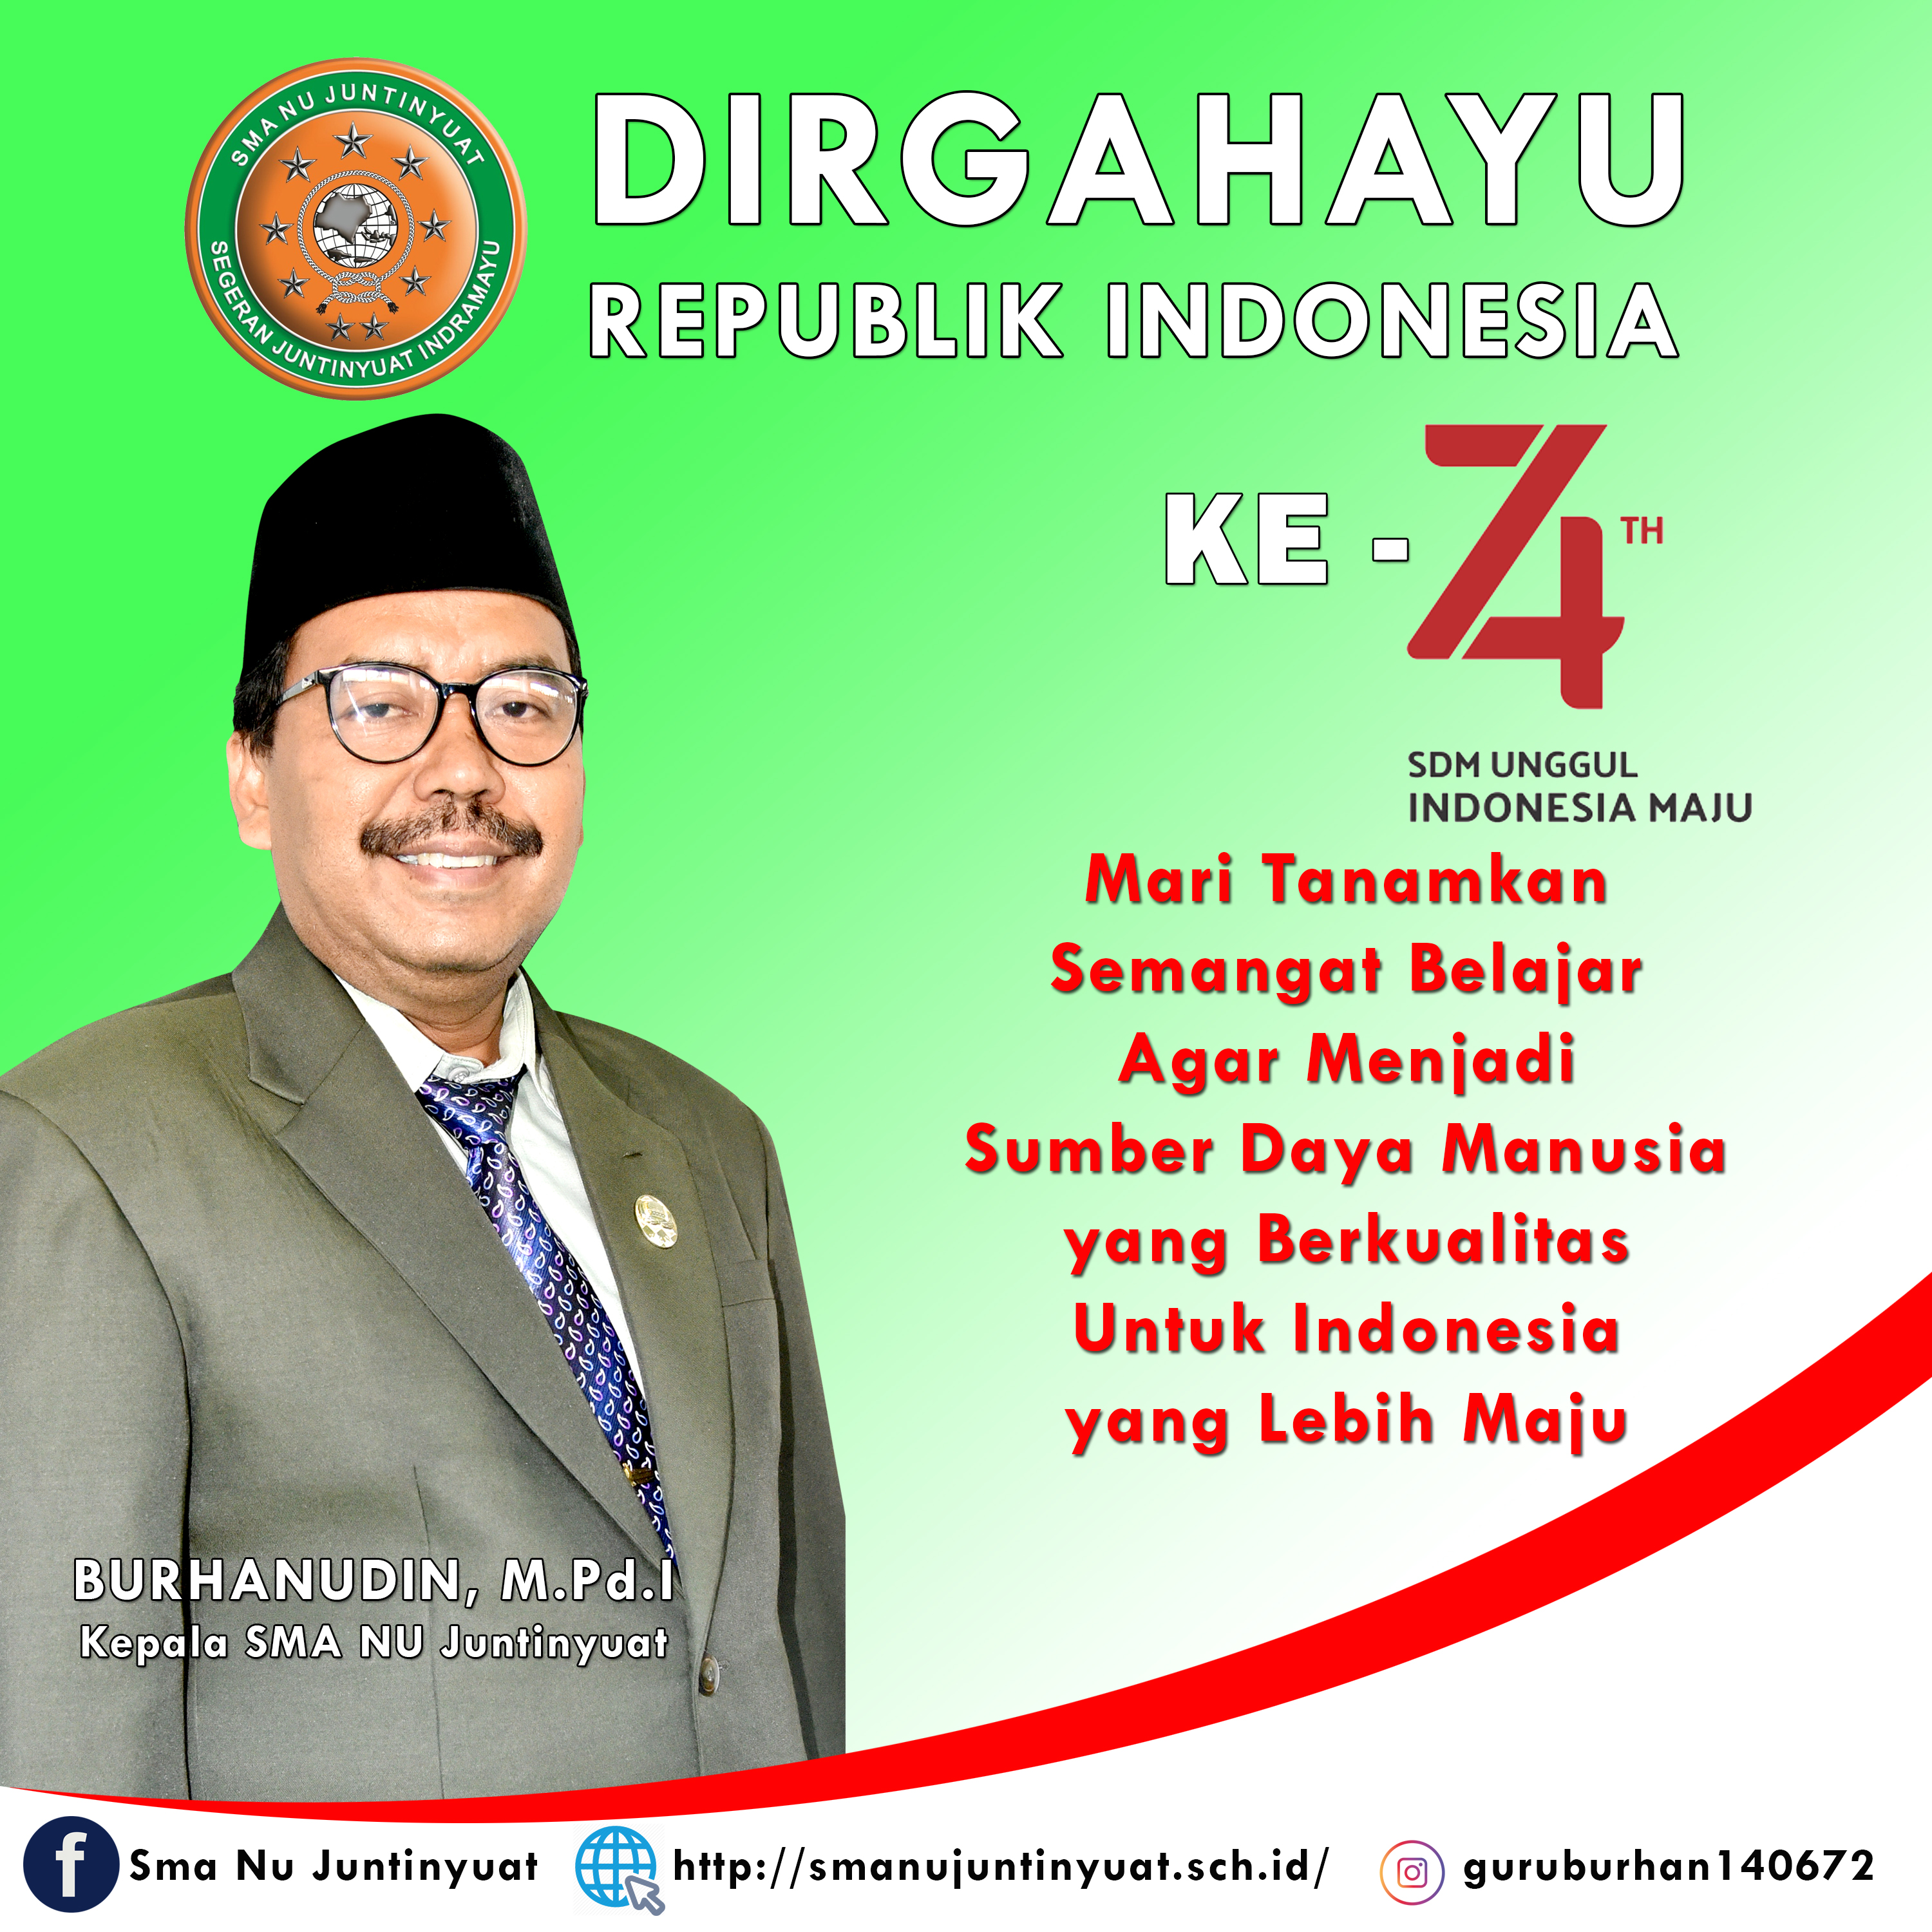 Dirgahayu Republik Indonesia ke 74